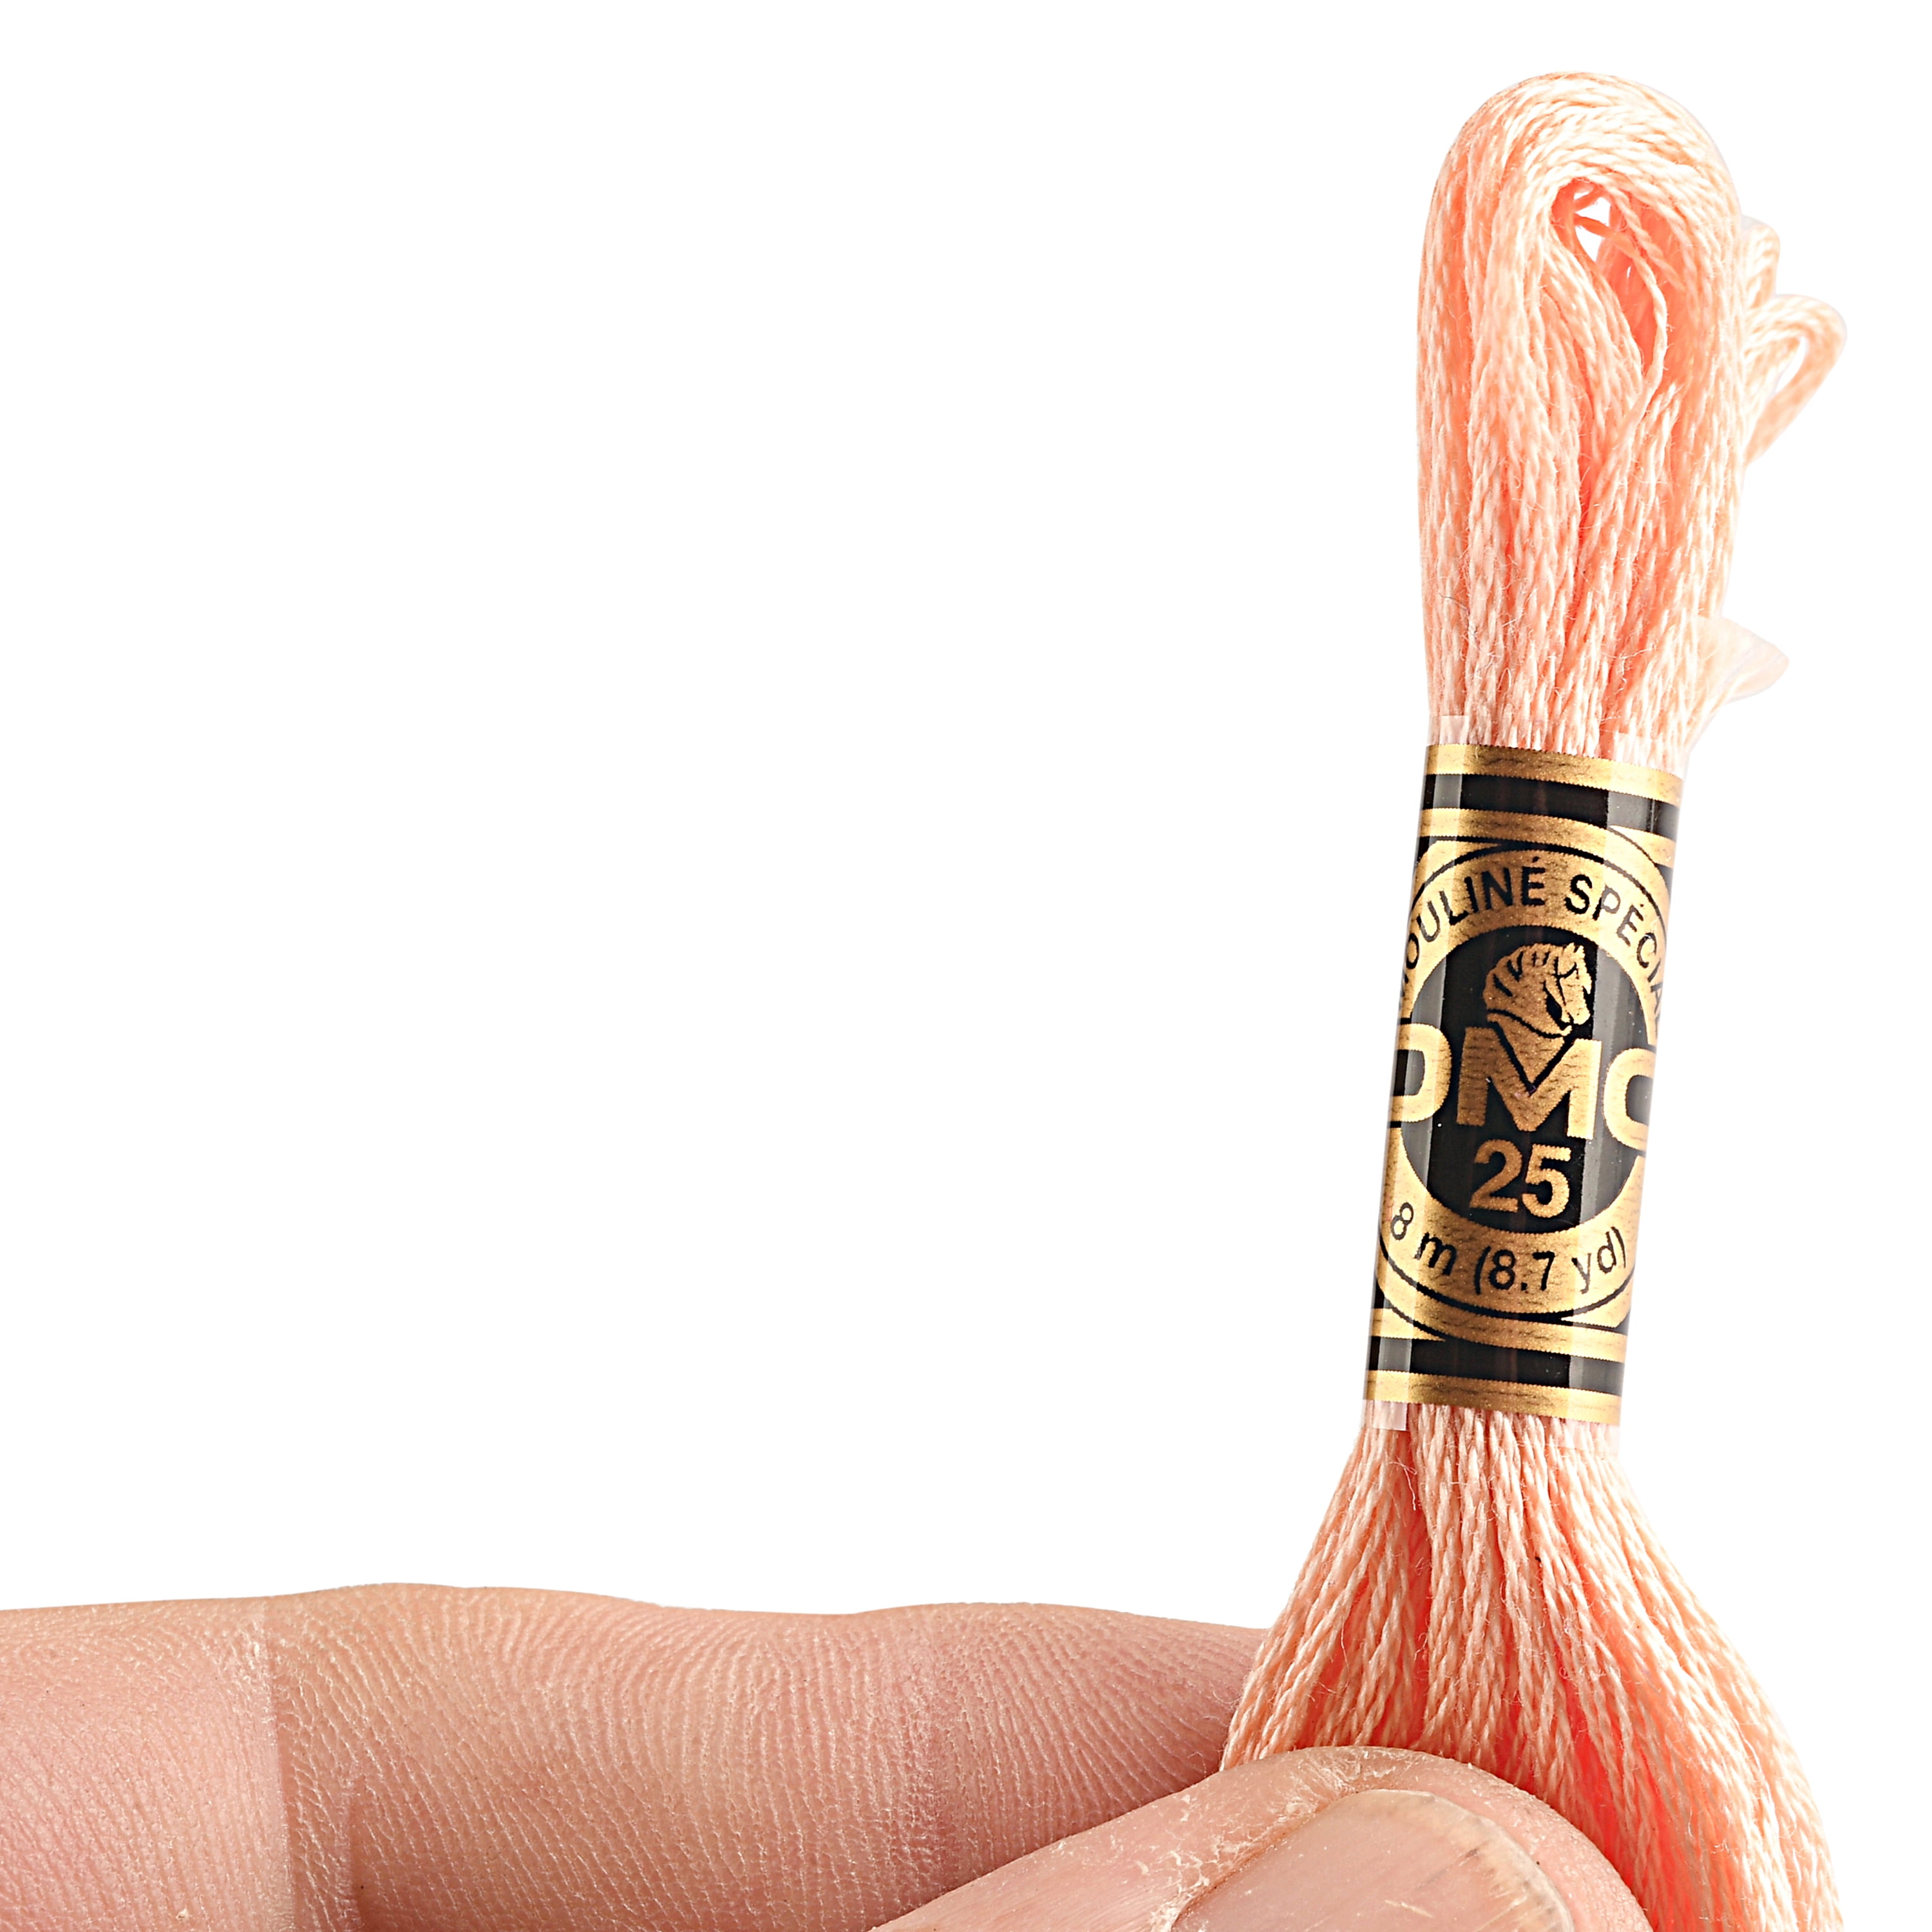 DMC Mouline Special Peach Flesh Floss Embroidery Yarn, 8.7 Yd. 